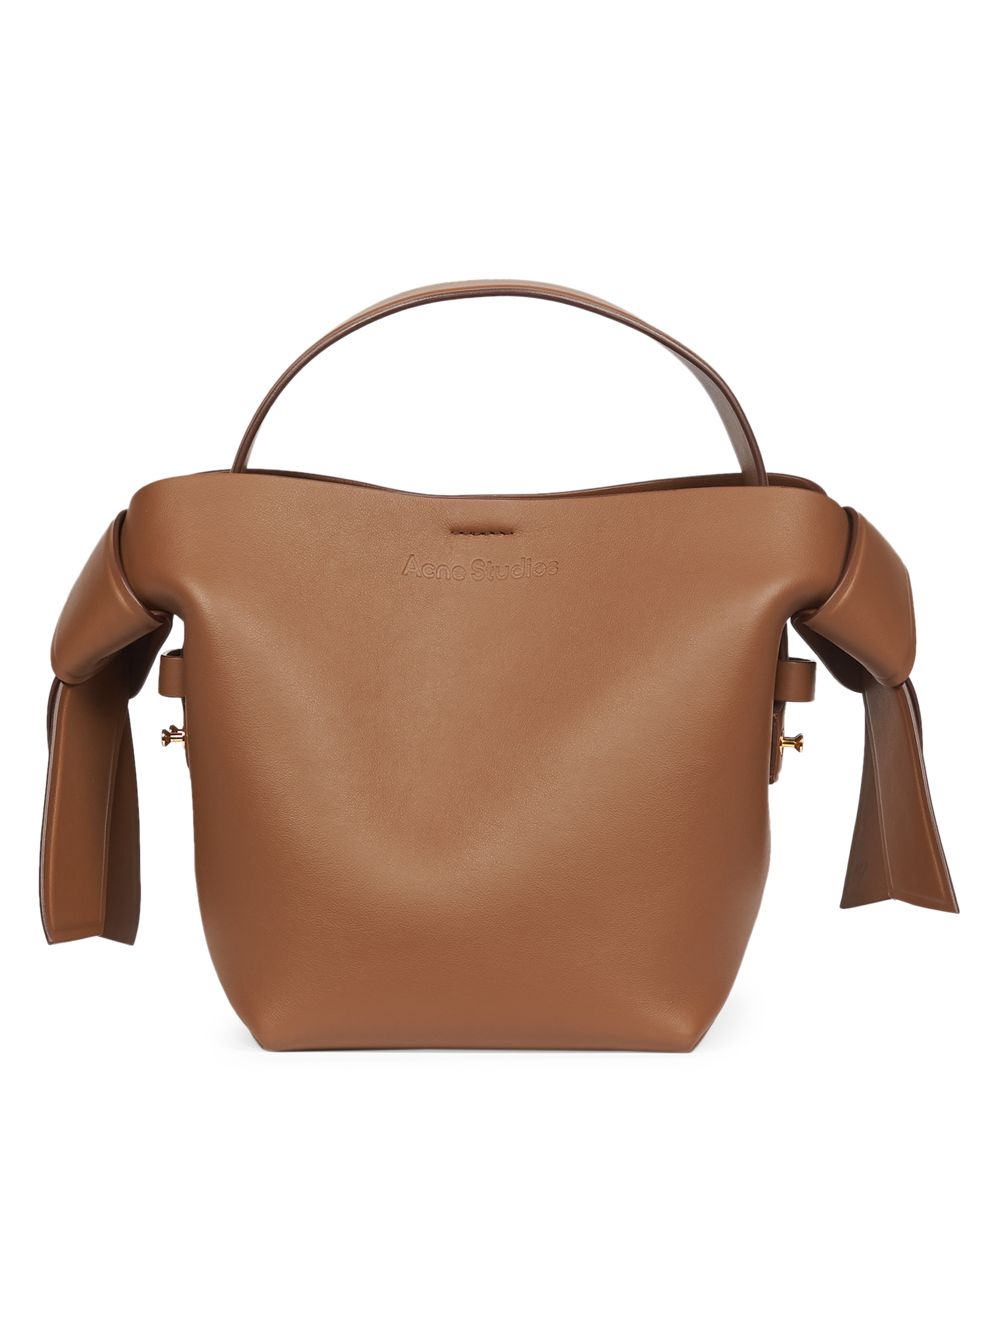 Миниатюрная кожаная сумка через плечо Musubi Acne Studios, коричневый ресейл сумка acne studios musubi коричневый отличное